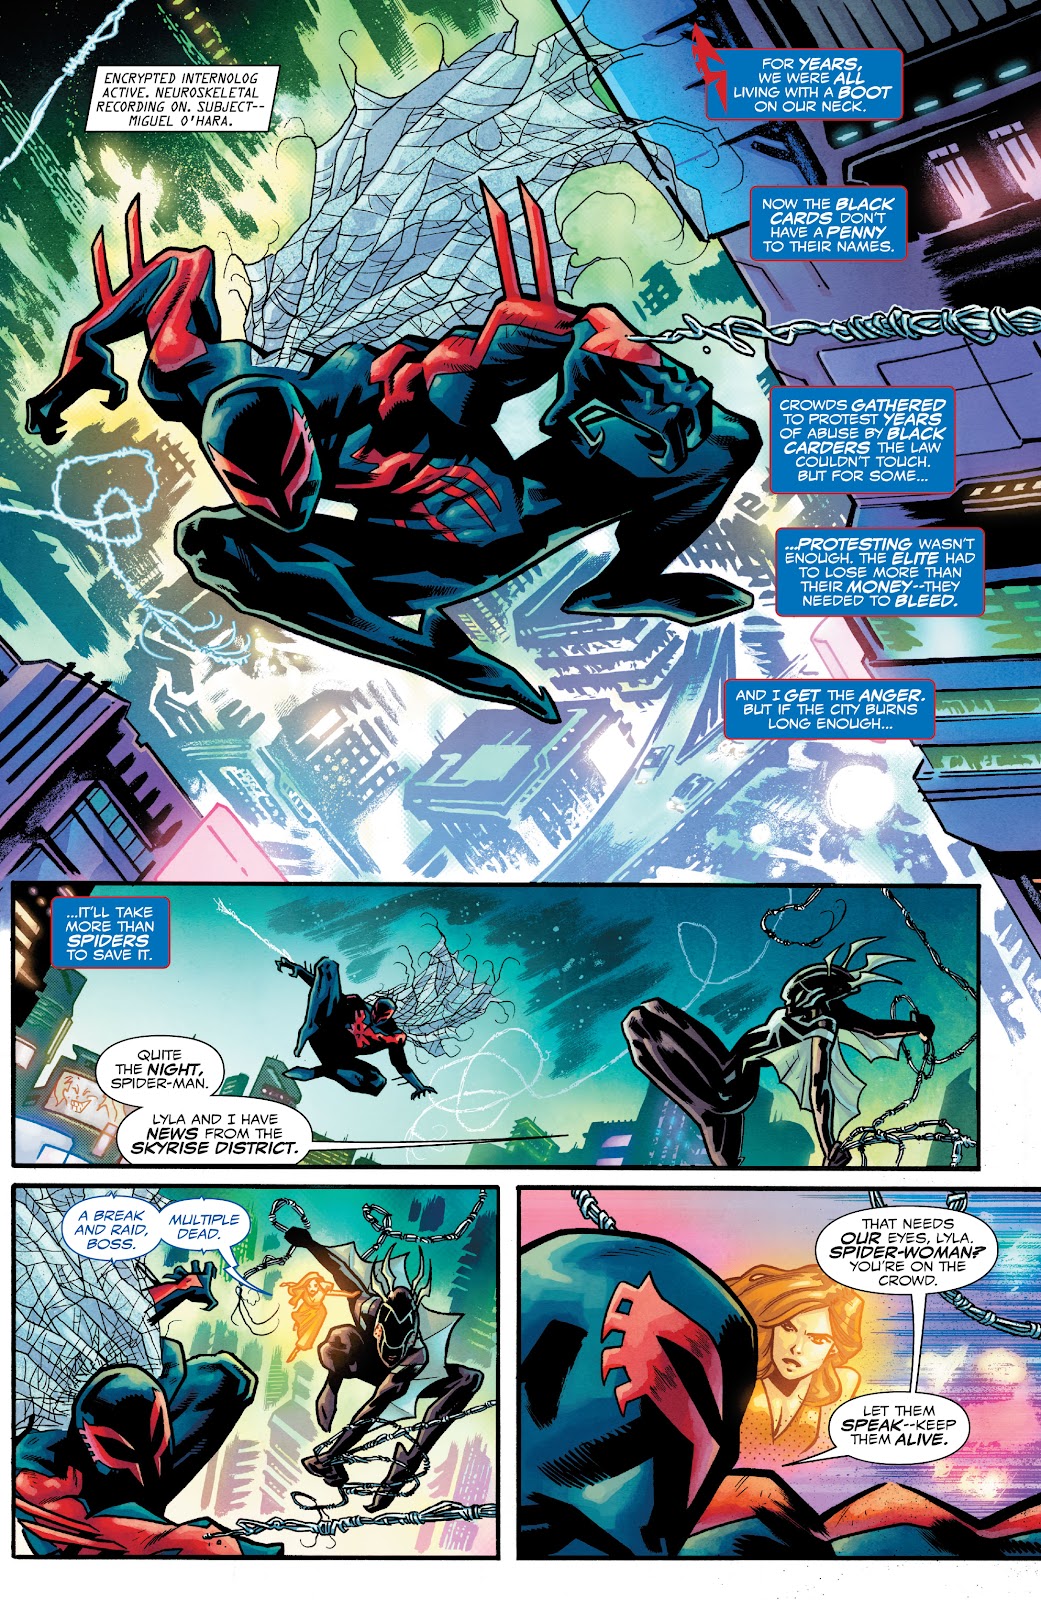 Spider-Man 2099: Dark Genesis issue 1 - Page 8